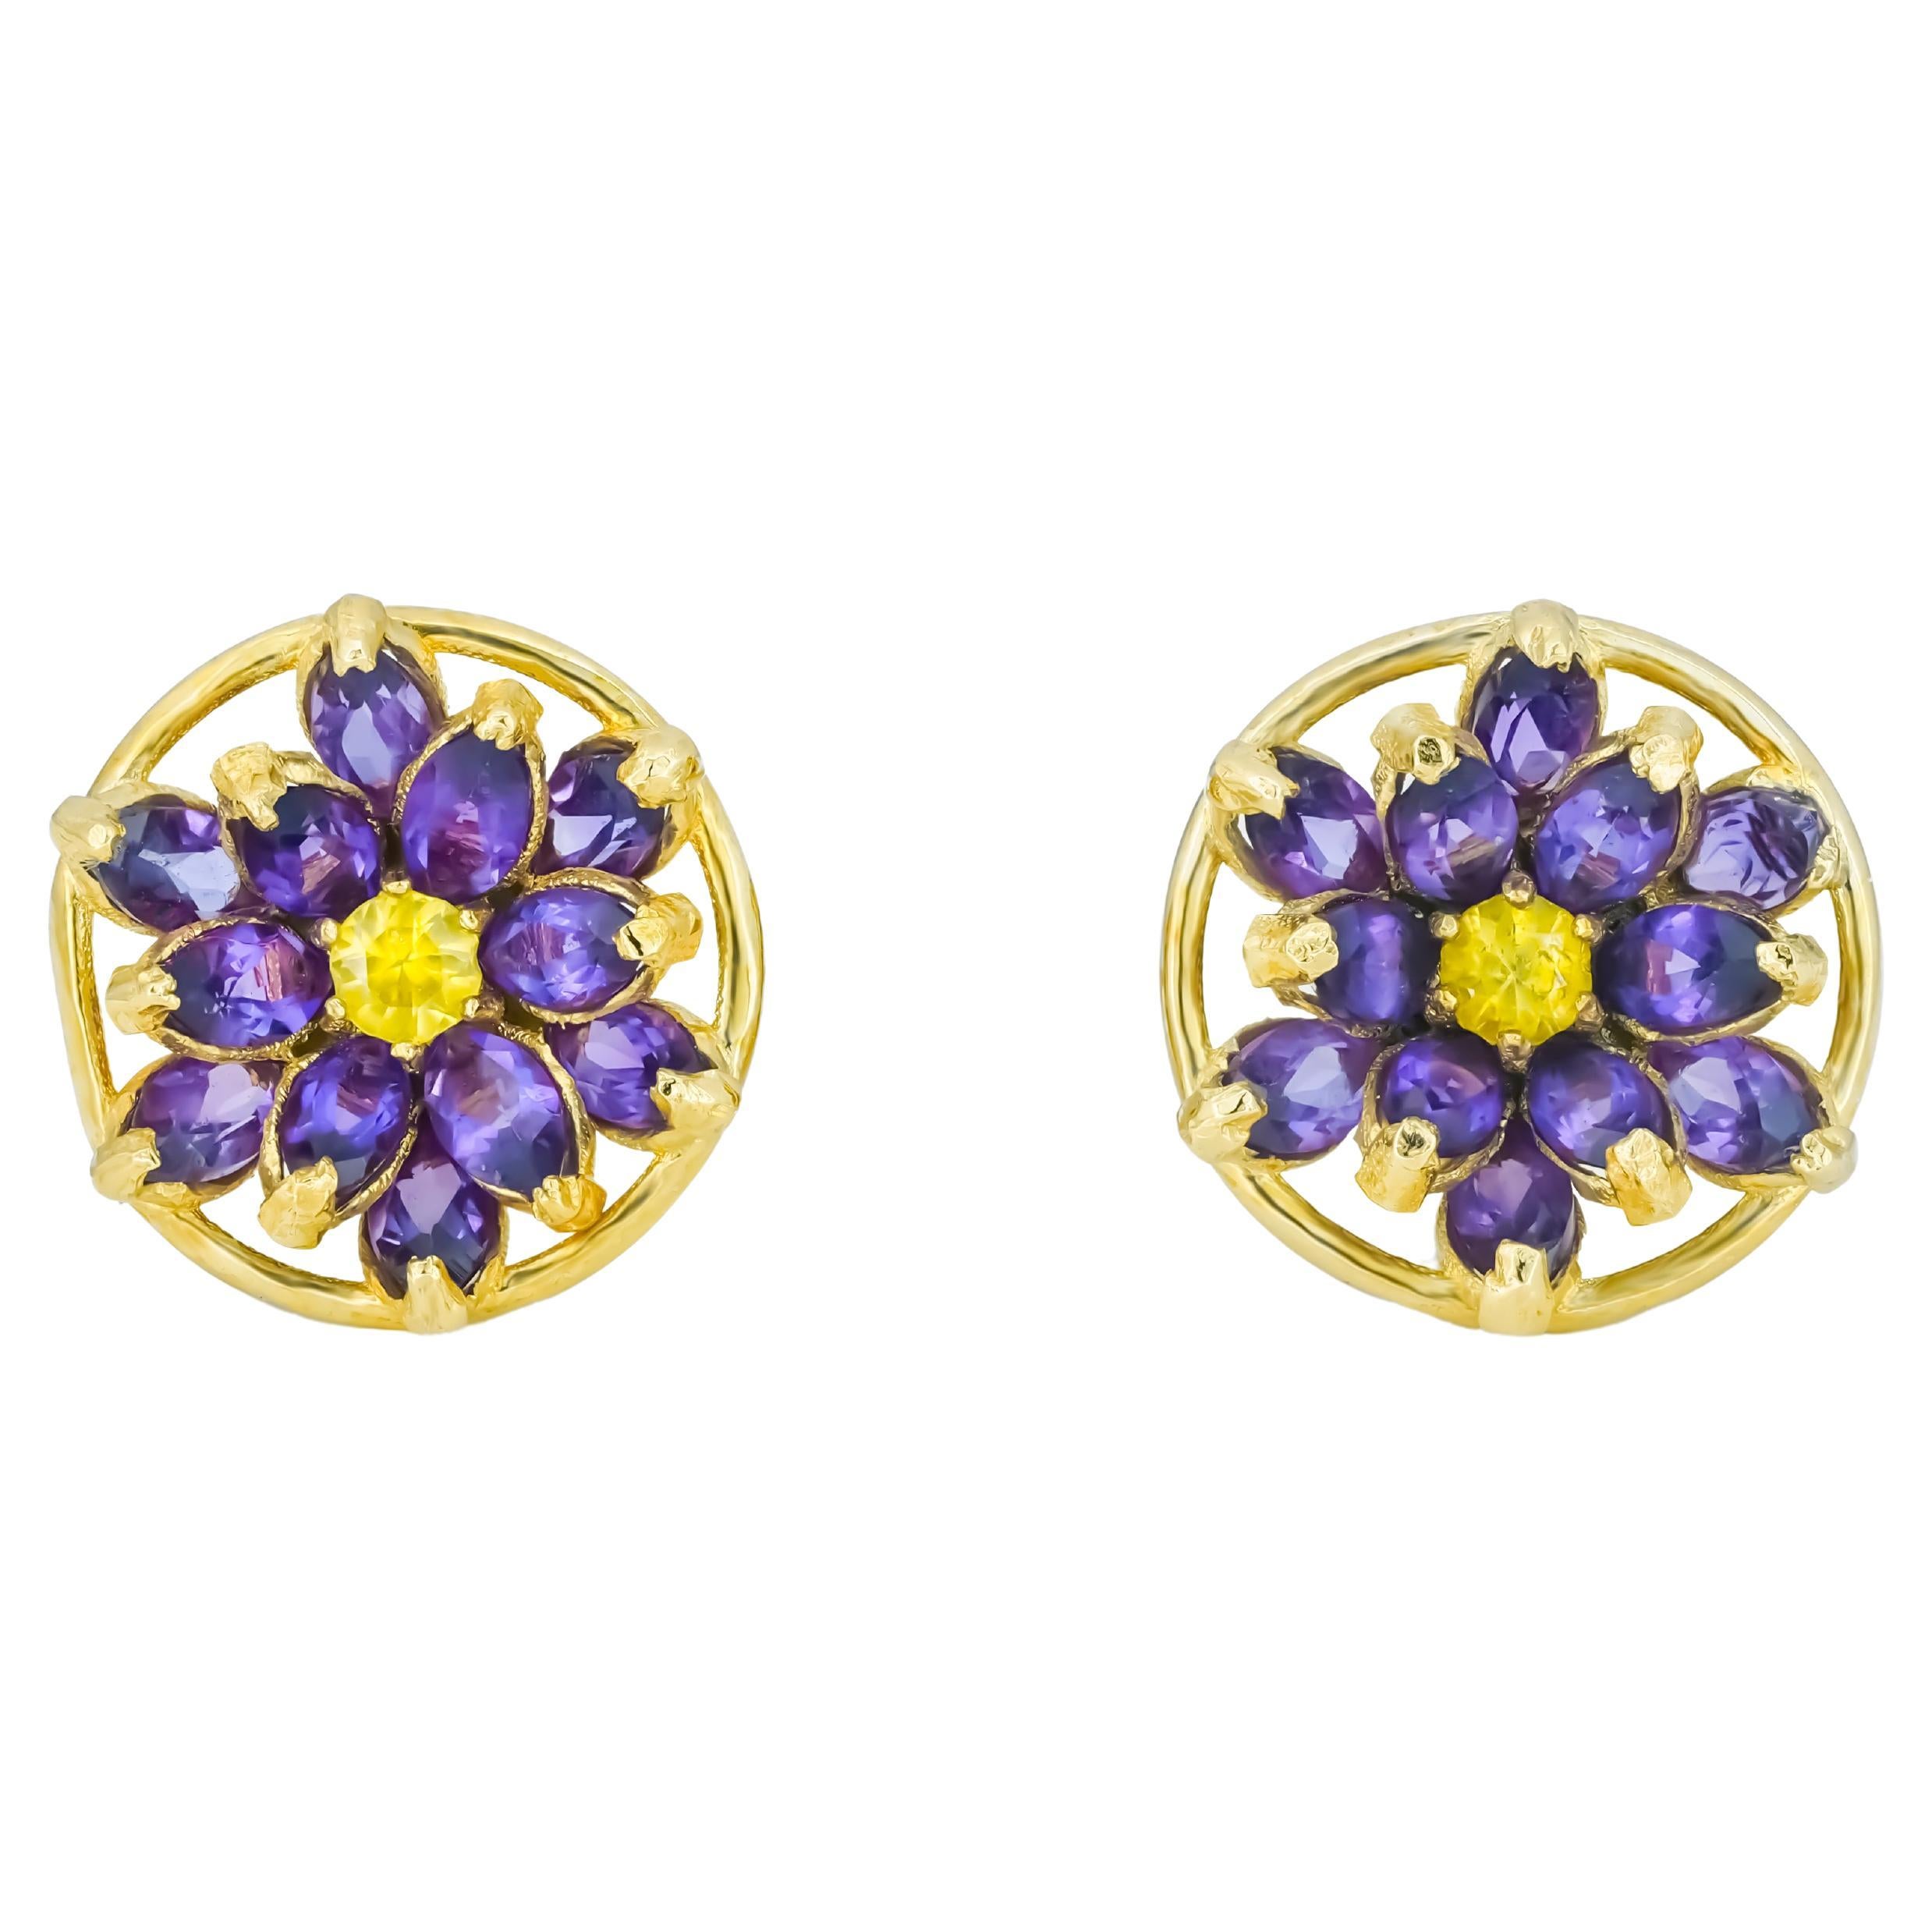 Lotus Flower Earrings Studs in 14k Gold, Amethyst and Sapphires Earrings